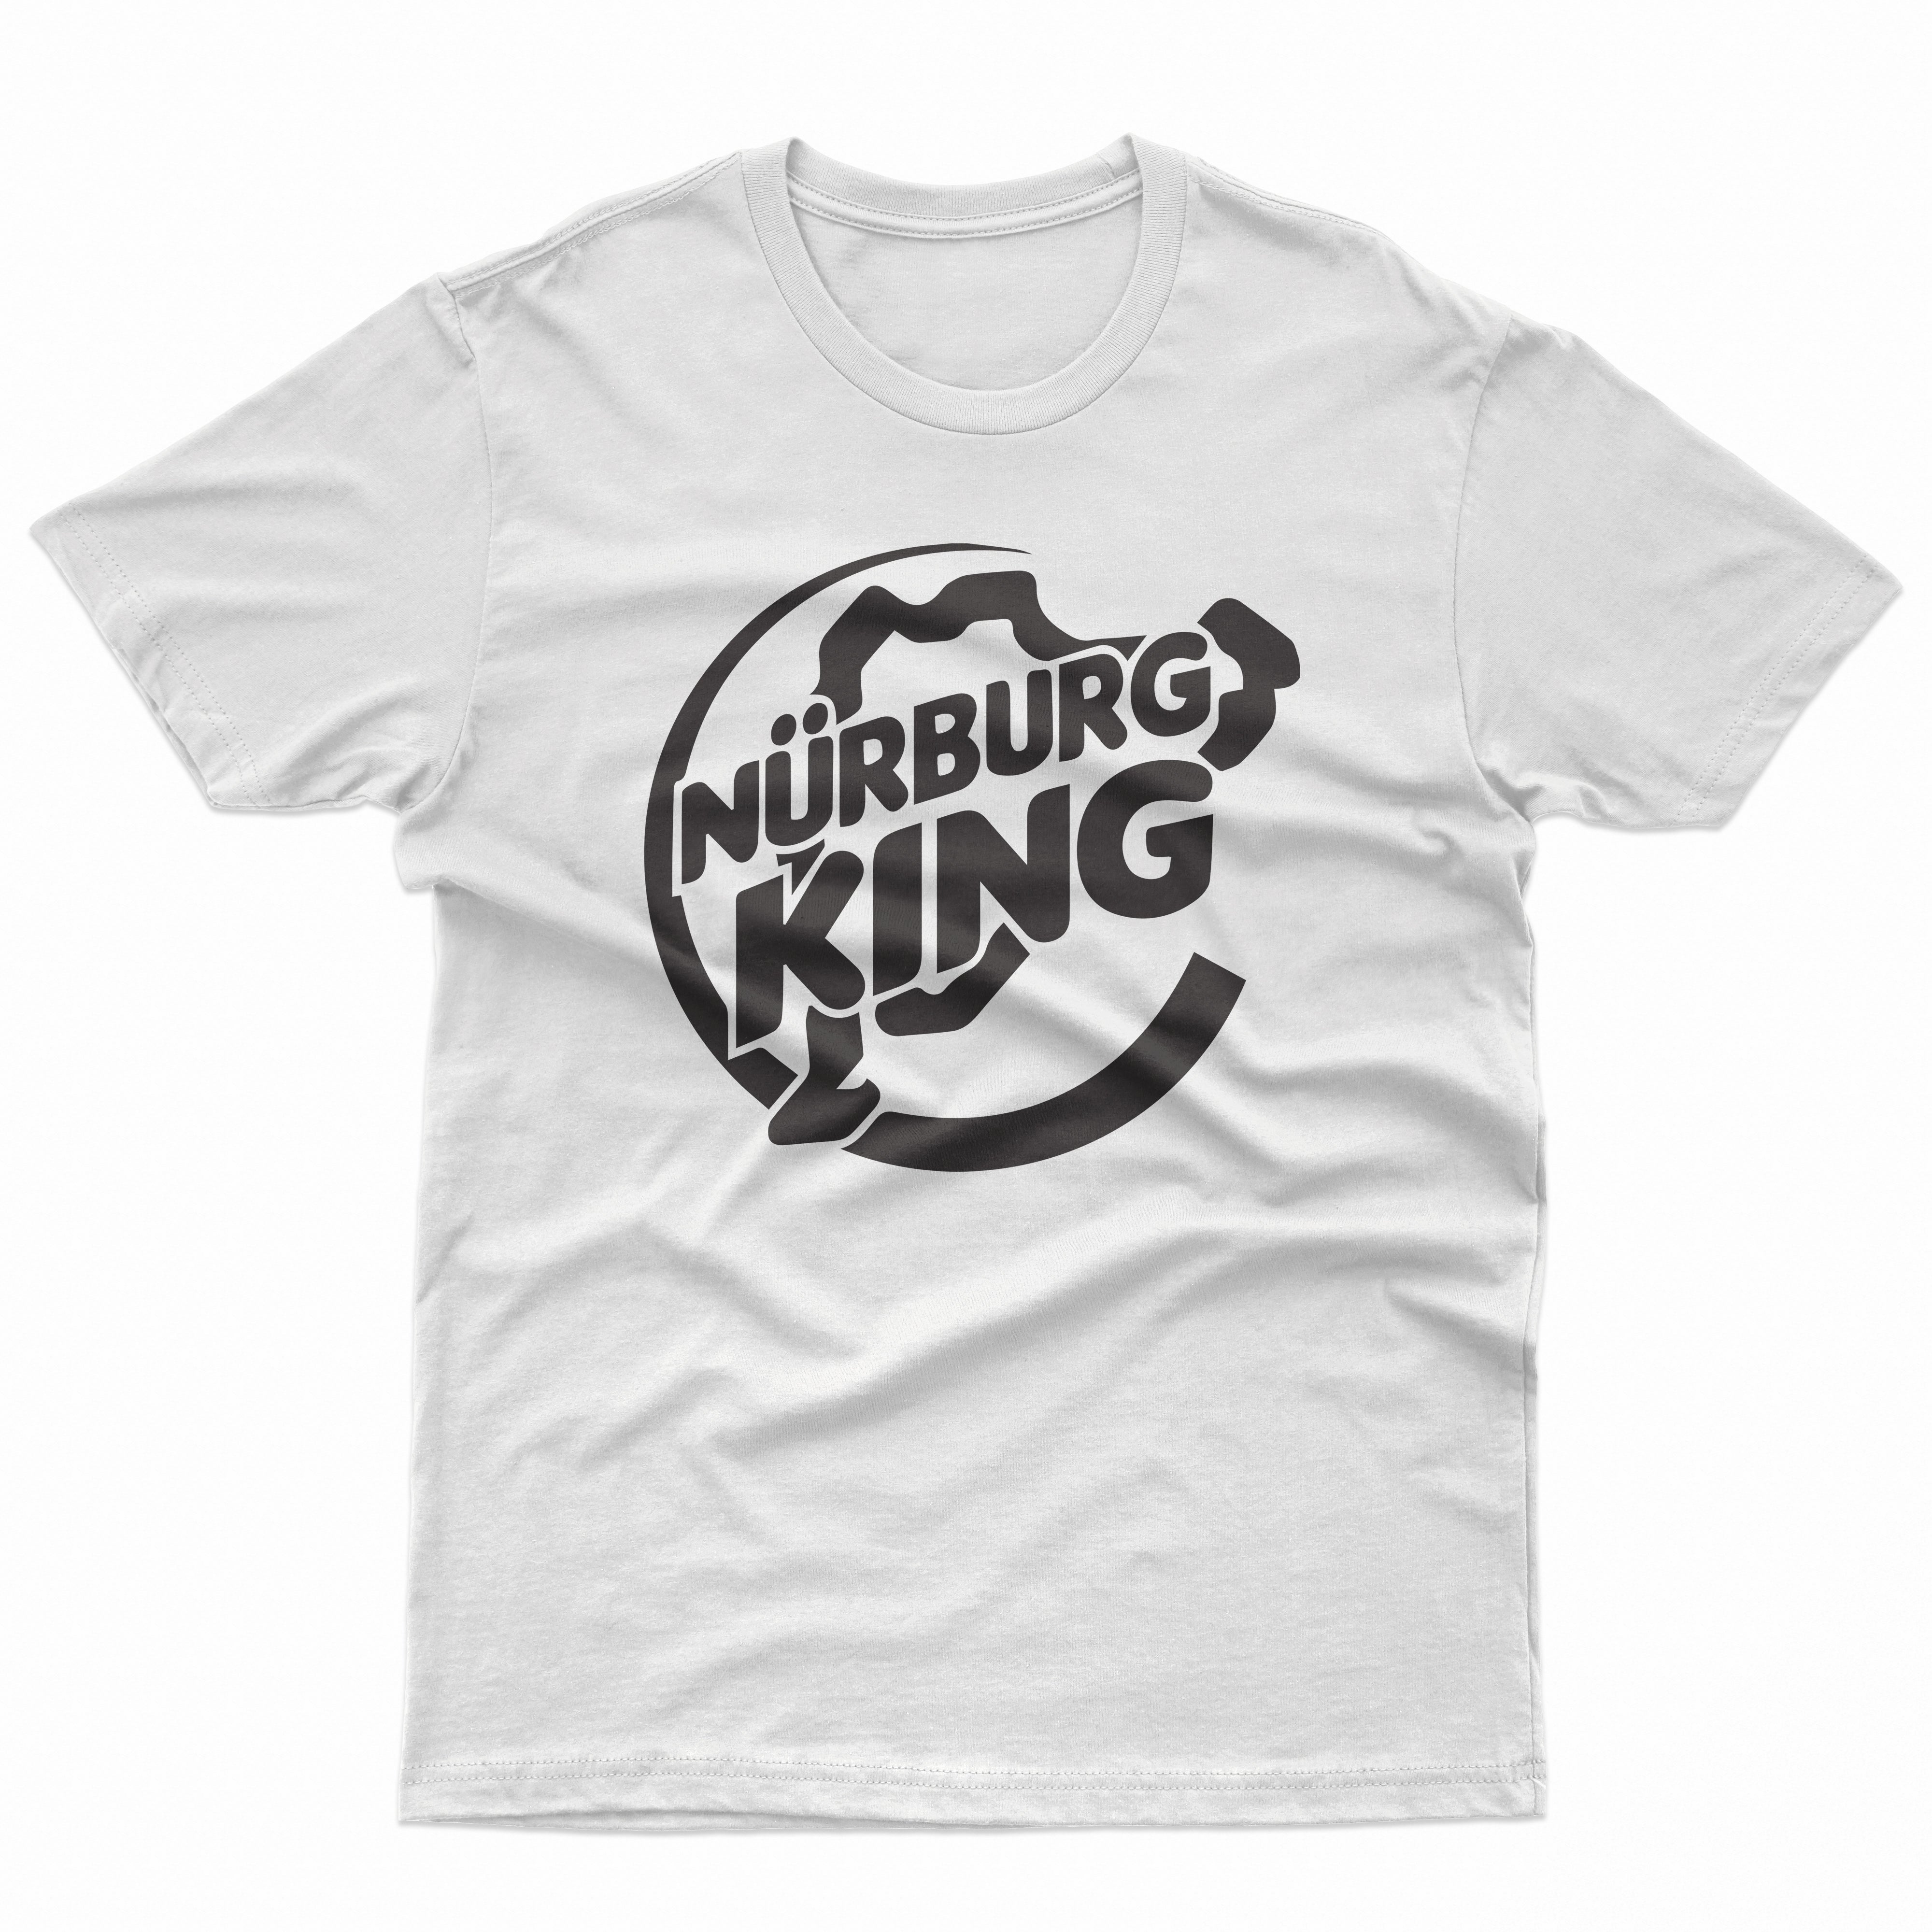 Nurburg King Kids T Shirt